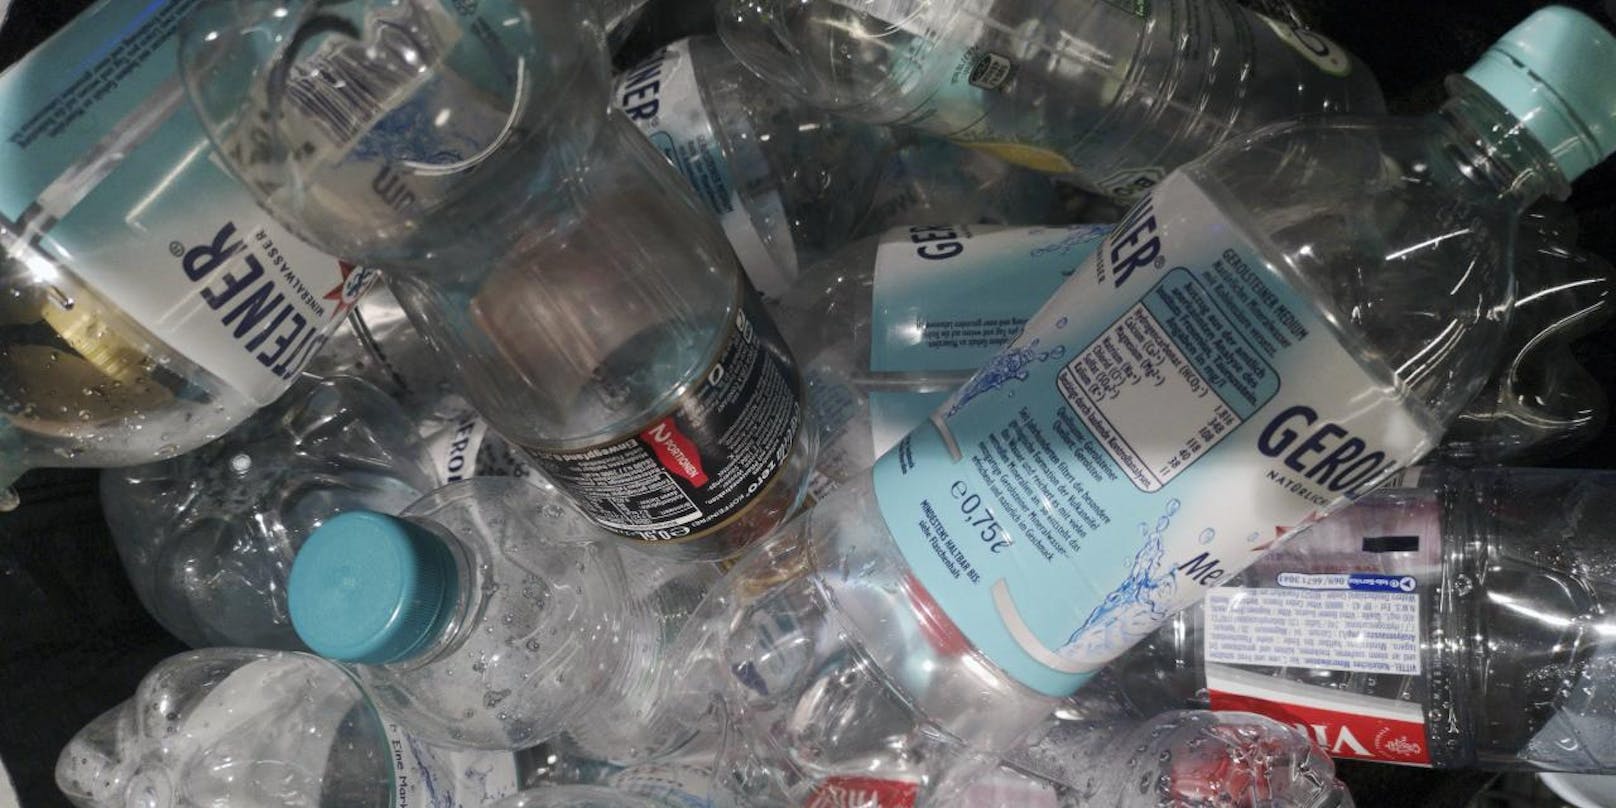 Plastik landet oft in der Umwelt.